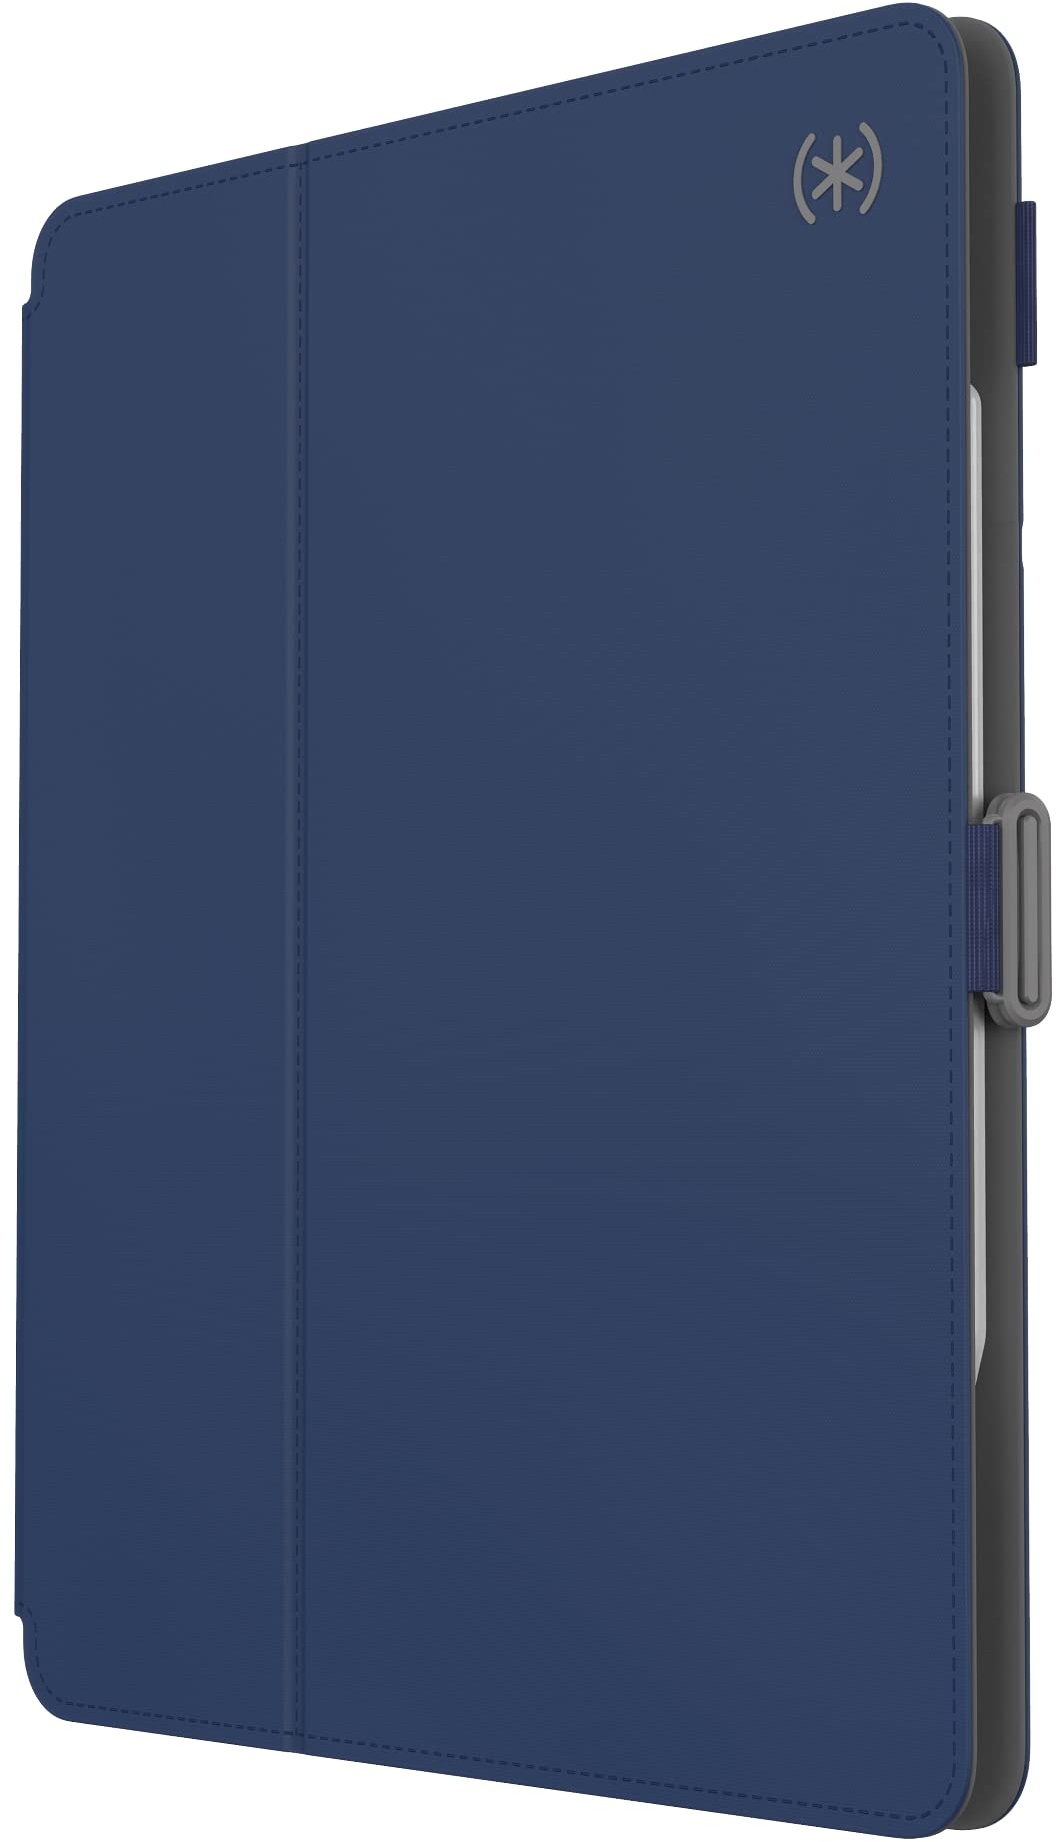 Speck Schutzhülle für iPad Pro 6. Generation 12,9 Zoll – Fall- und Kameraschutz, schlanker Multi-Range-Ständer, Apple-Stifthalter, Arcadia Navy/Moody Grey